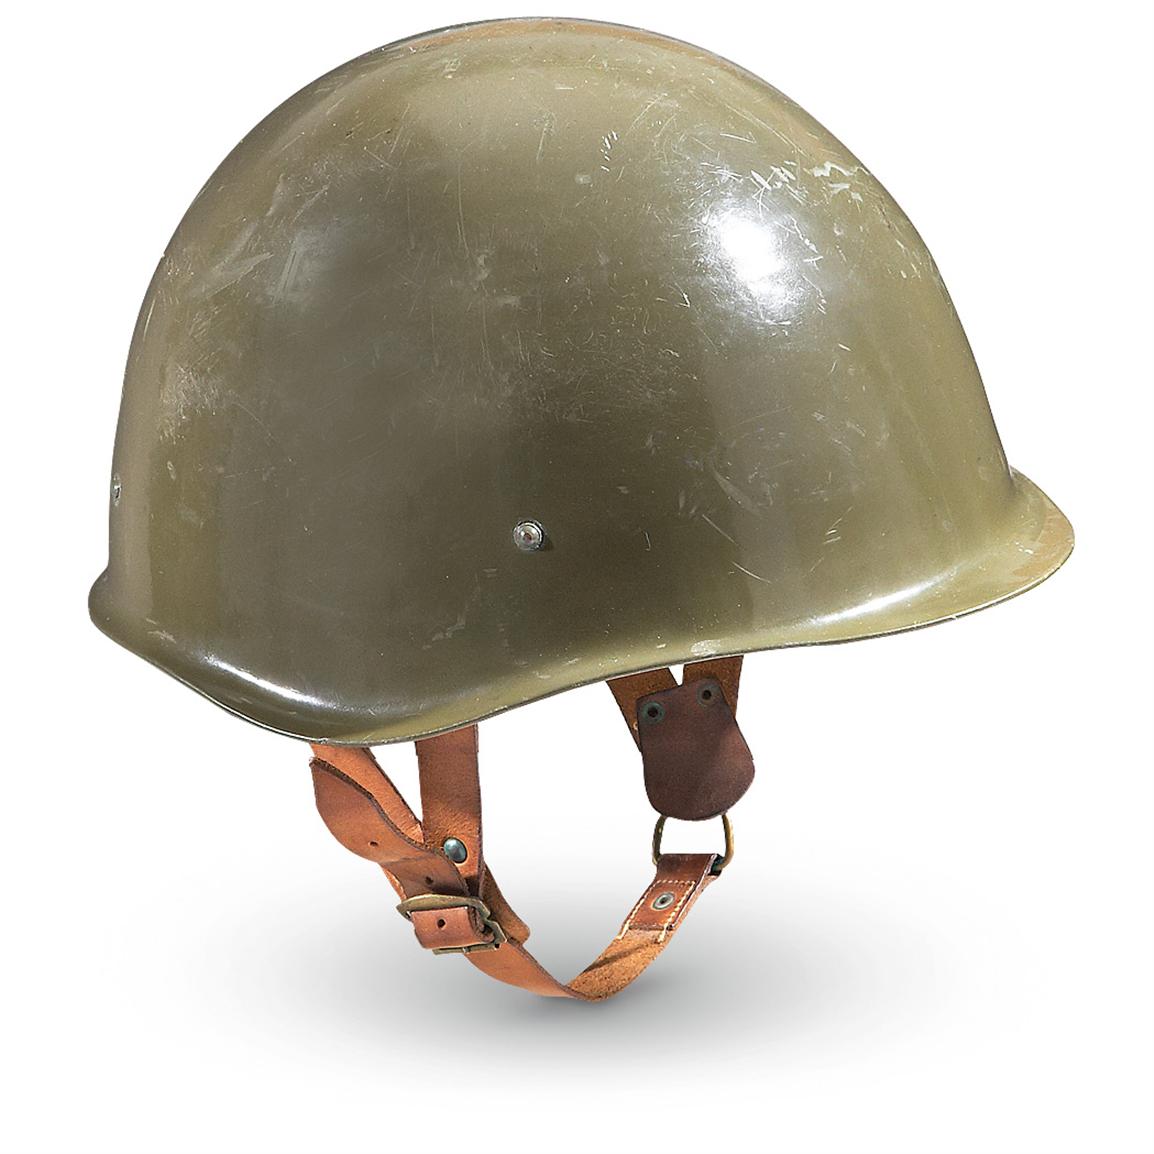 Hungarian Military Surplus Helmet, Used